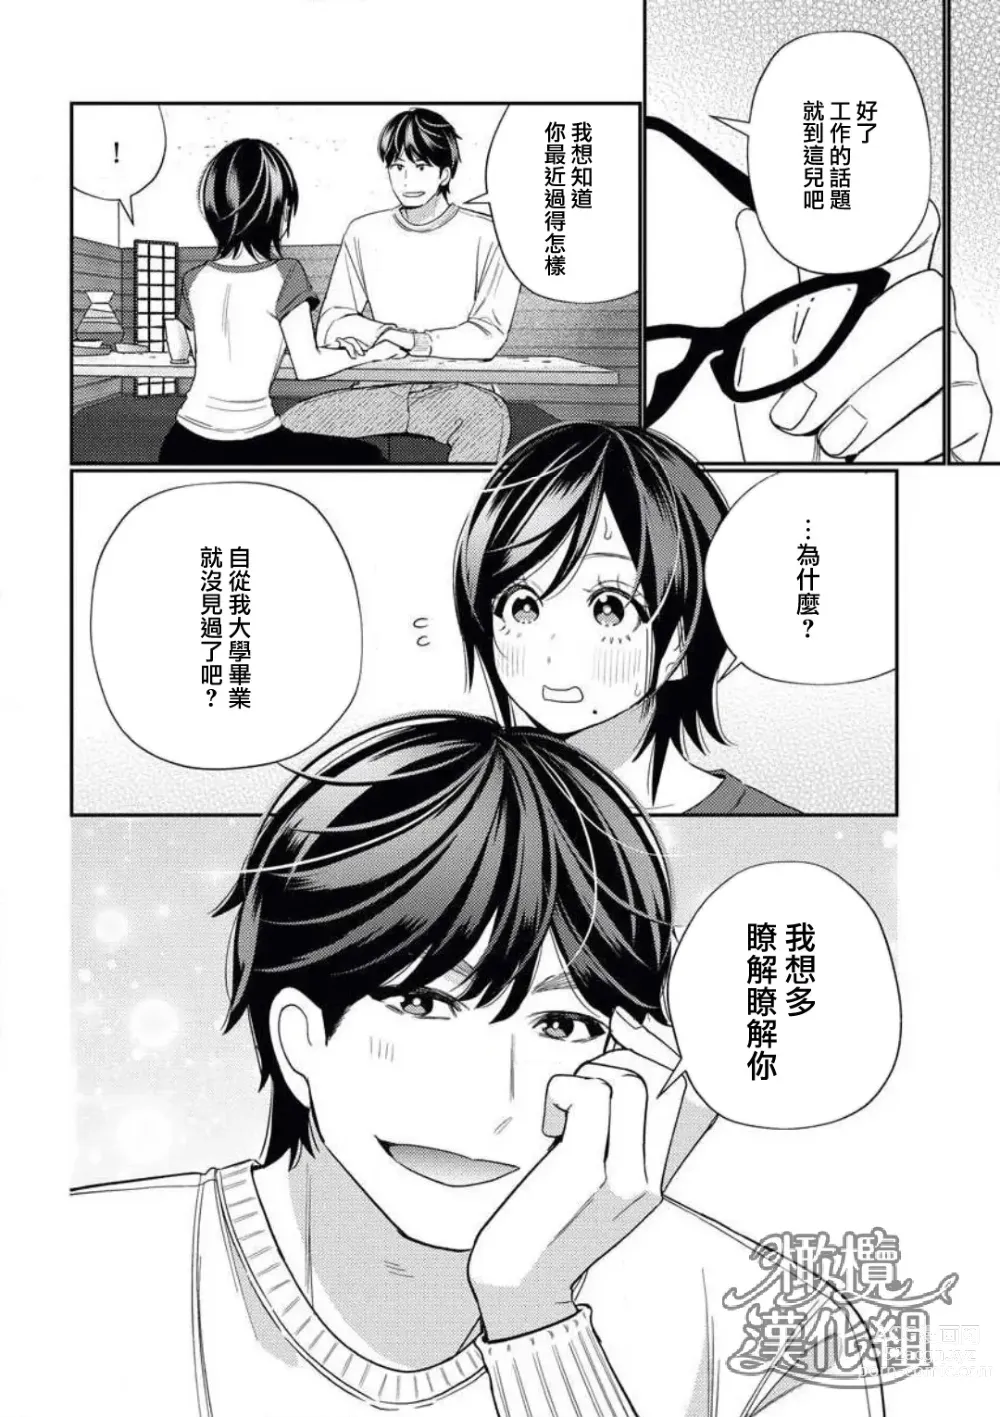 Page 12 of manga 青梅竹马难以攻陷被小黄话（※正当工作需求）玩弄一番